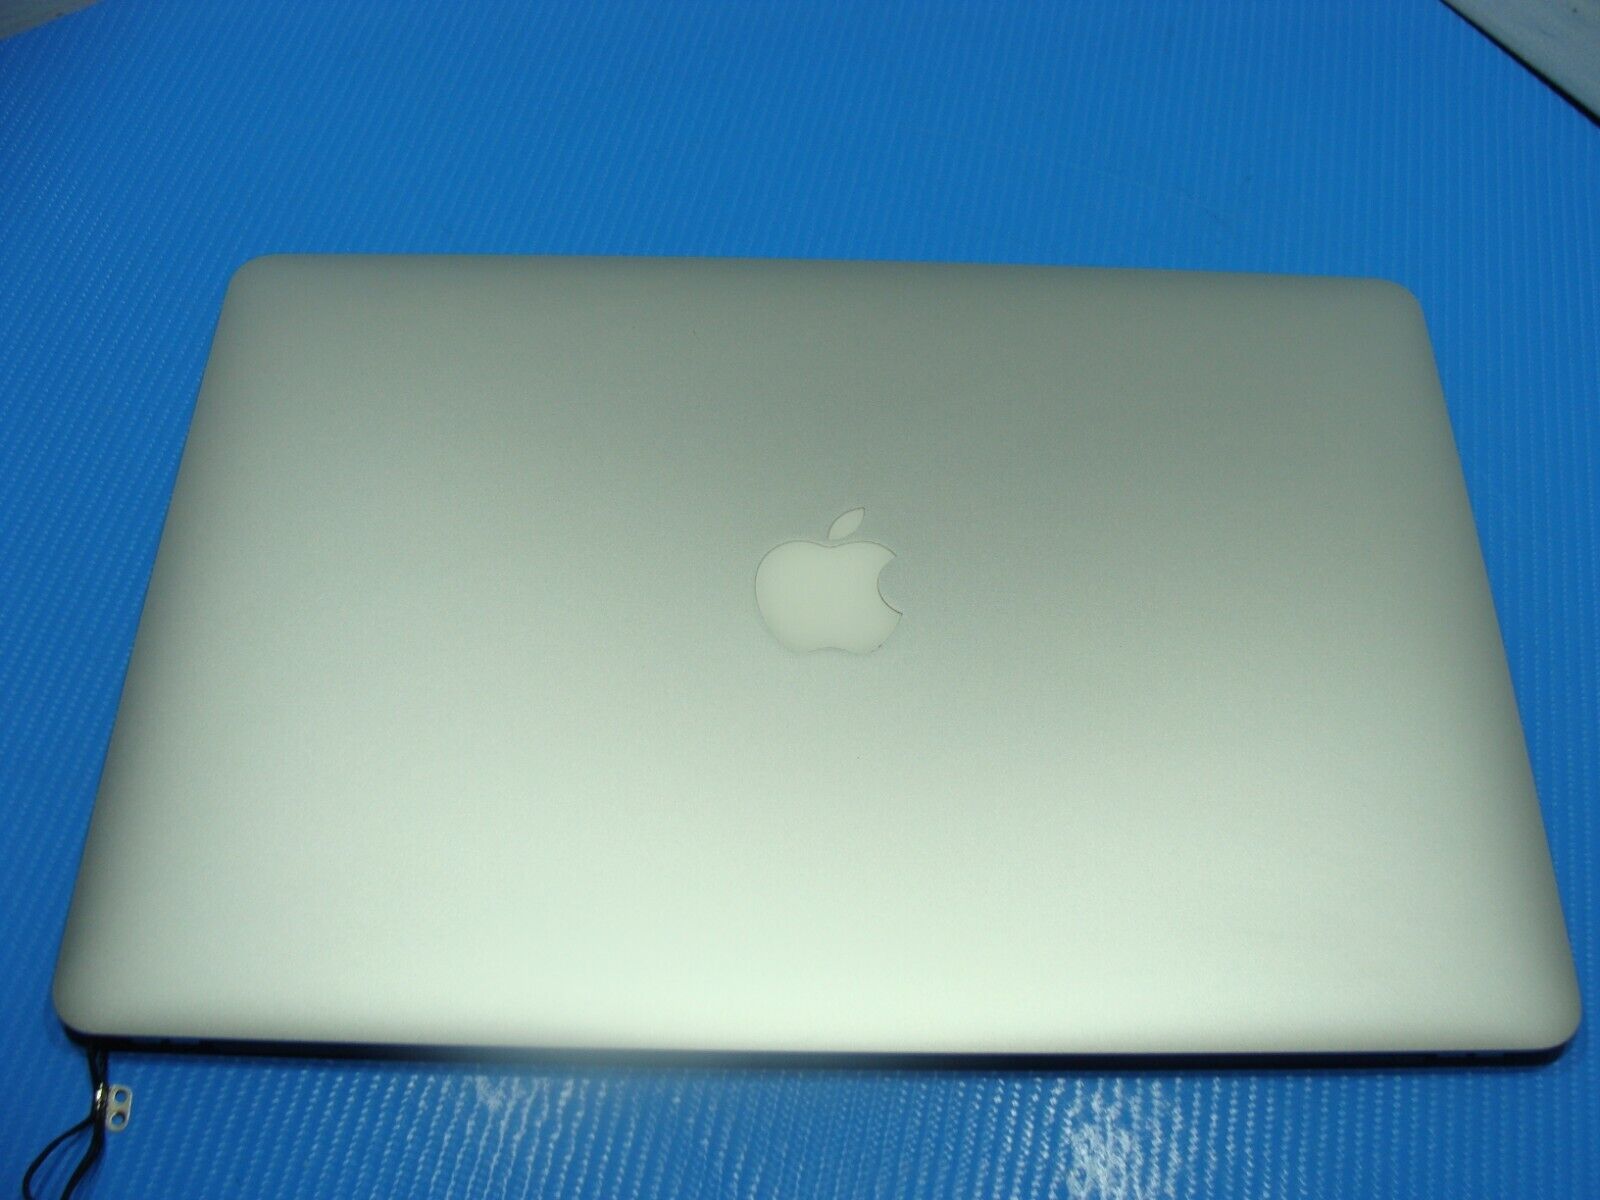 MacBook Pro A1398 15